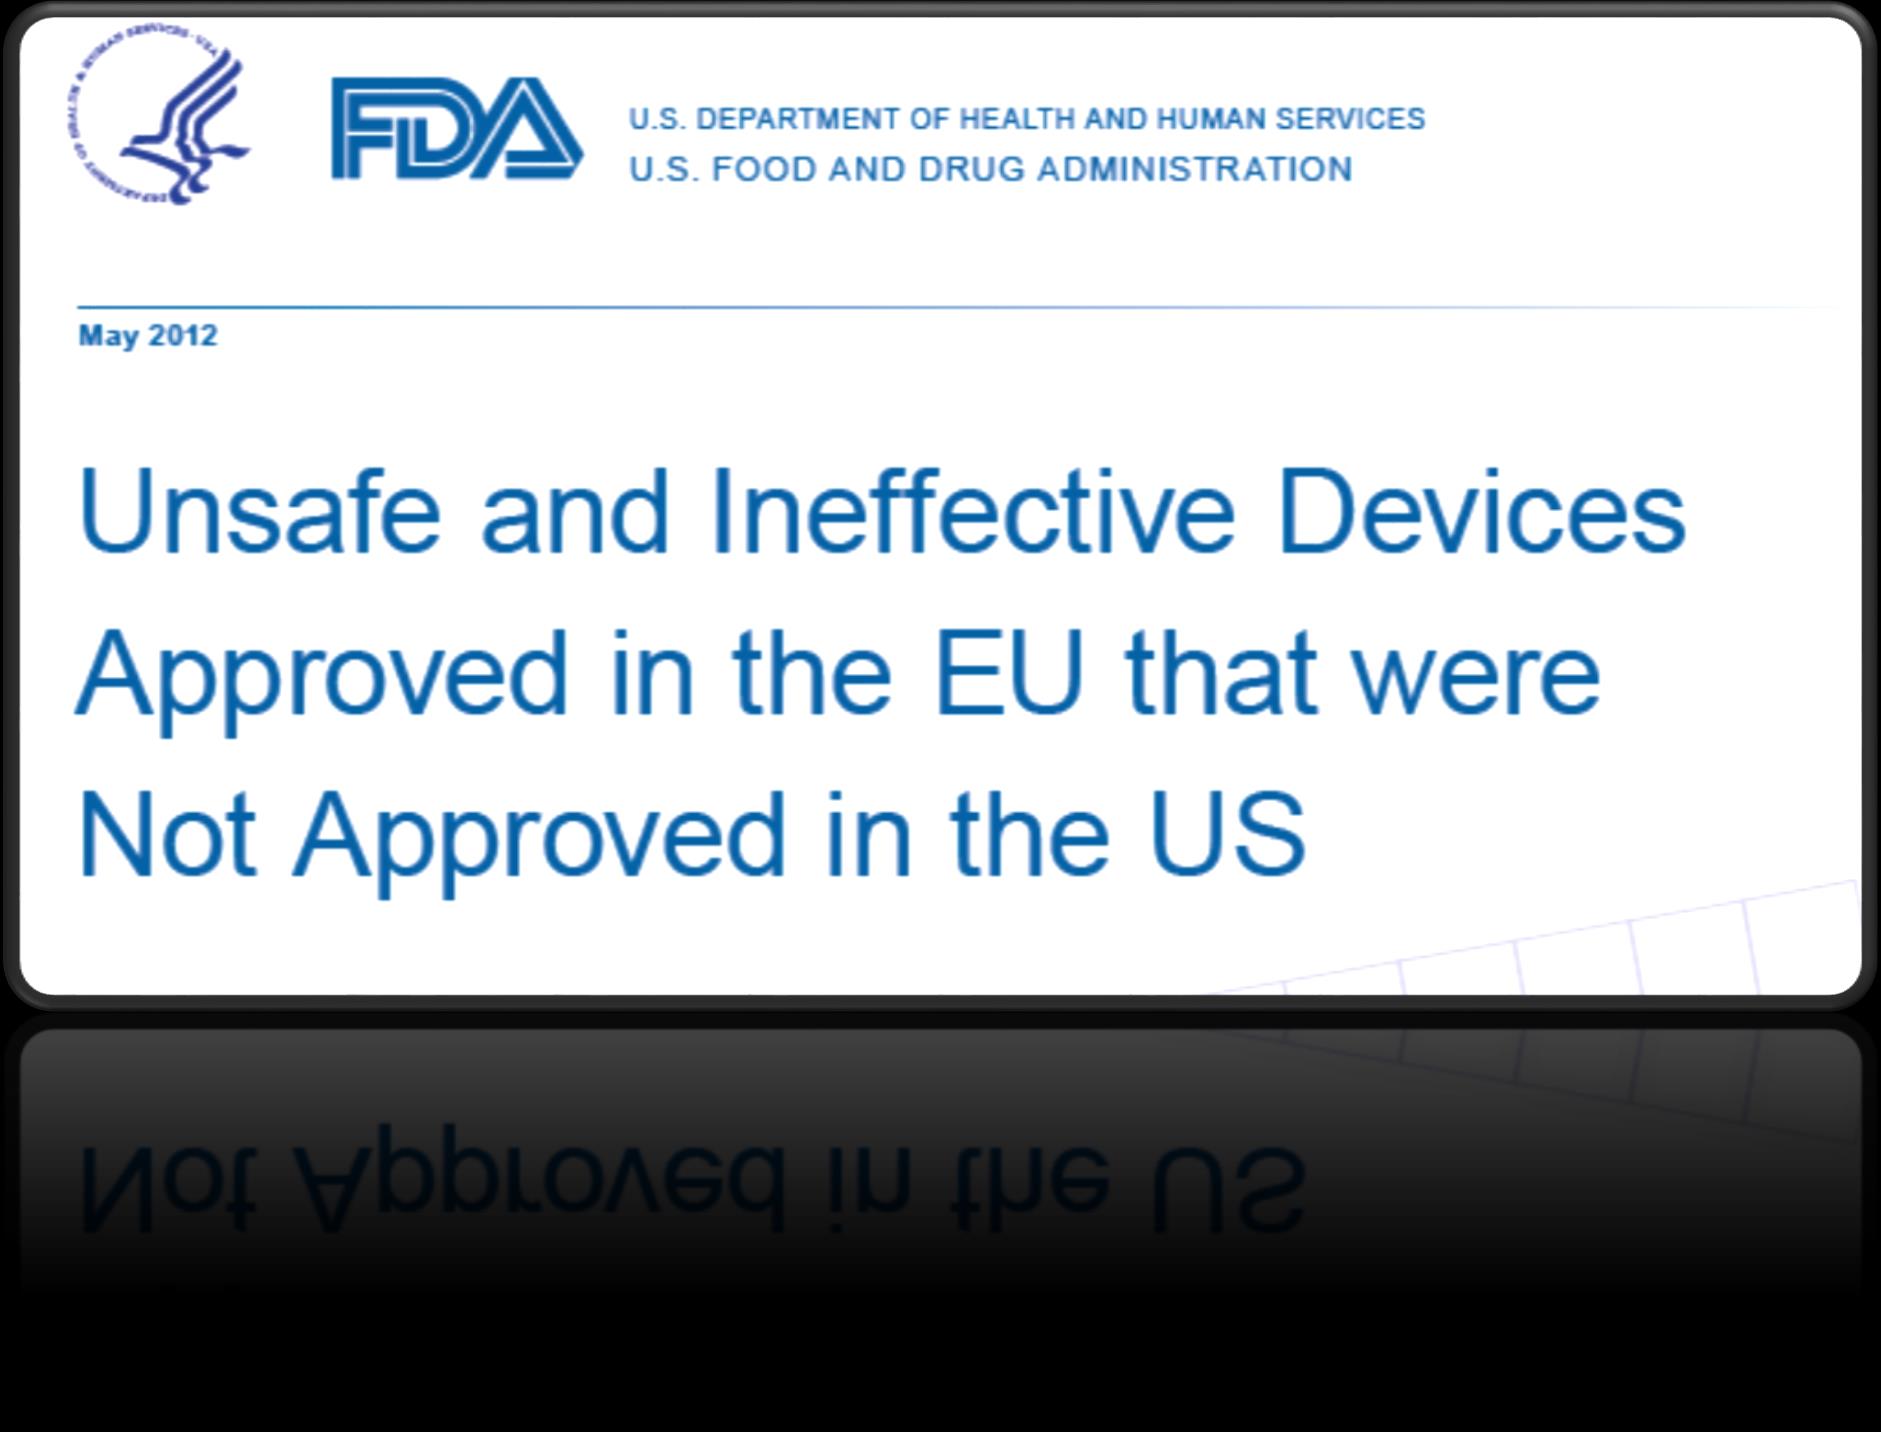 Mayıs 2012 de FDA tarafından Avrupa da onaylanan fakat Amerika da güvenlik ve performans sebeplerinden dolayı onaylanmayan ürünlere (yüksek risk içeren) ilişkin